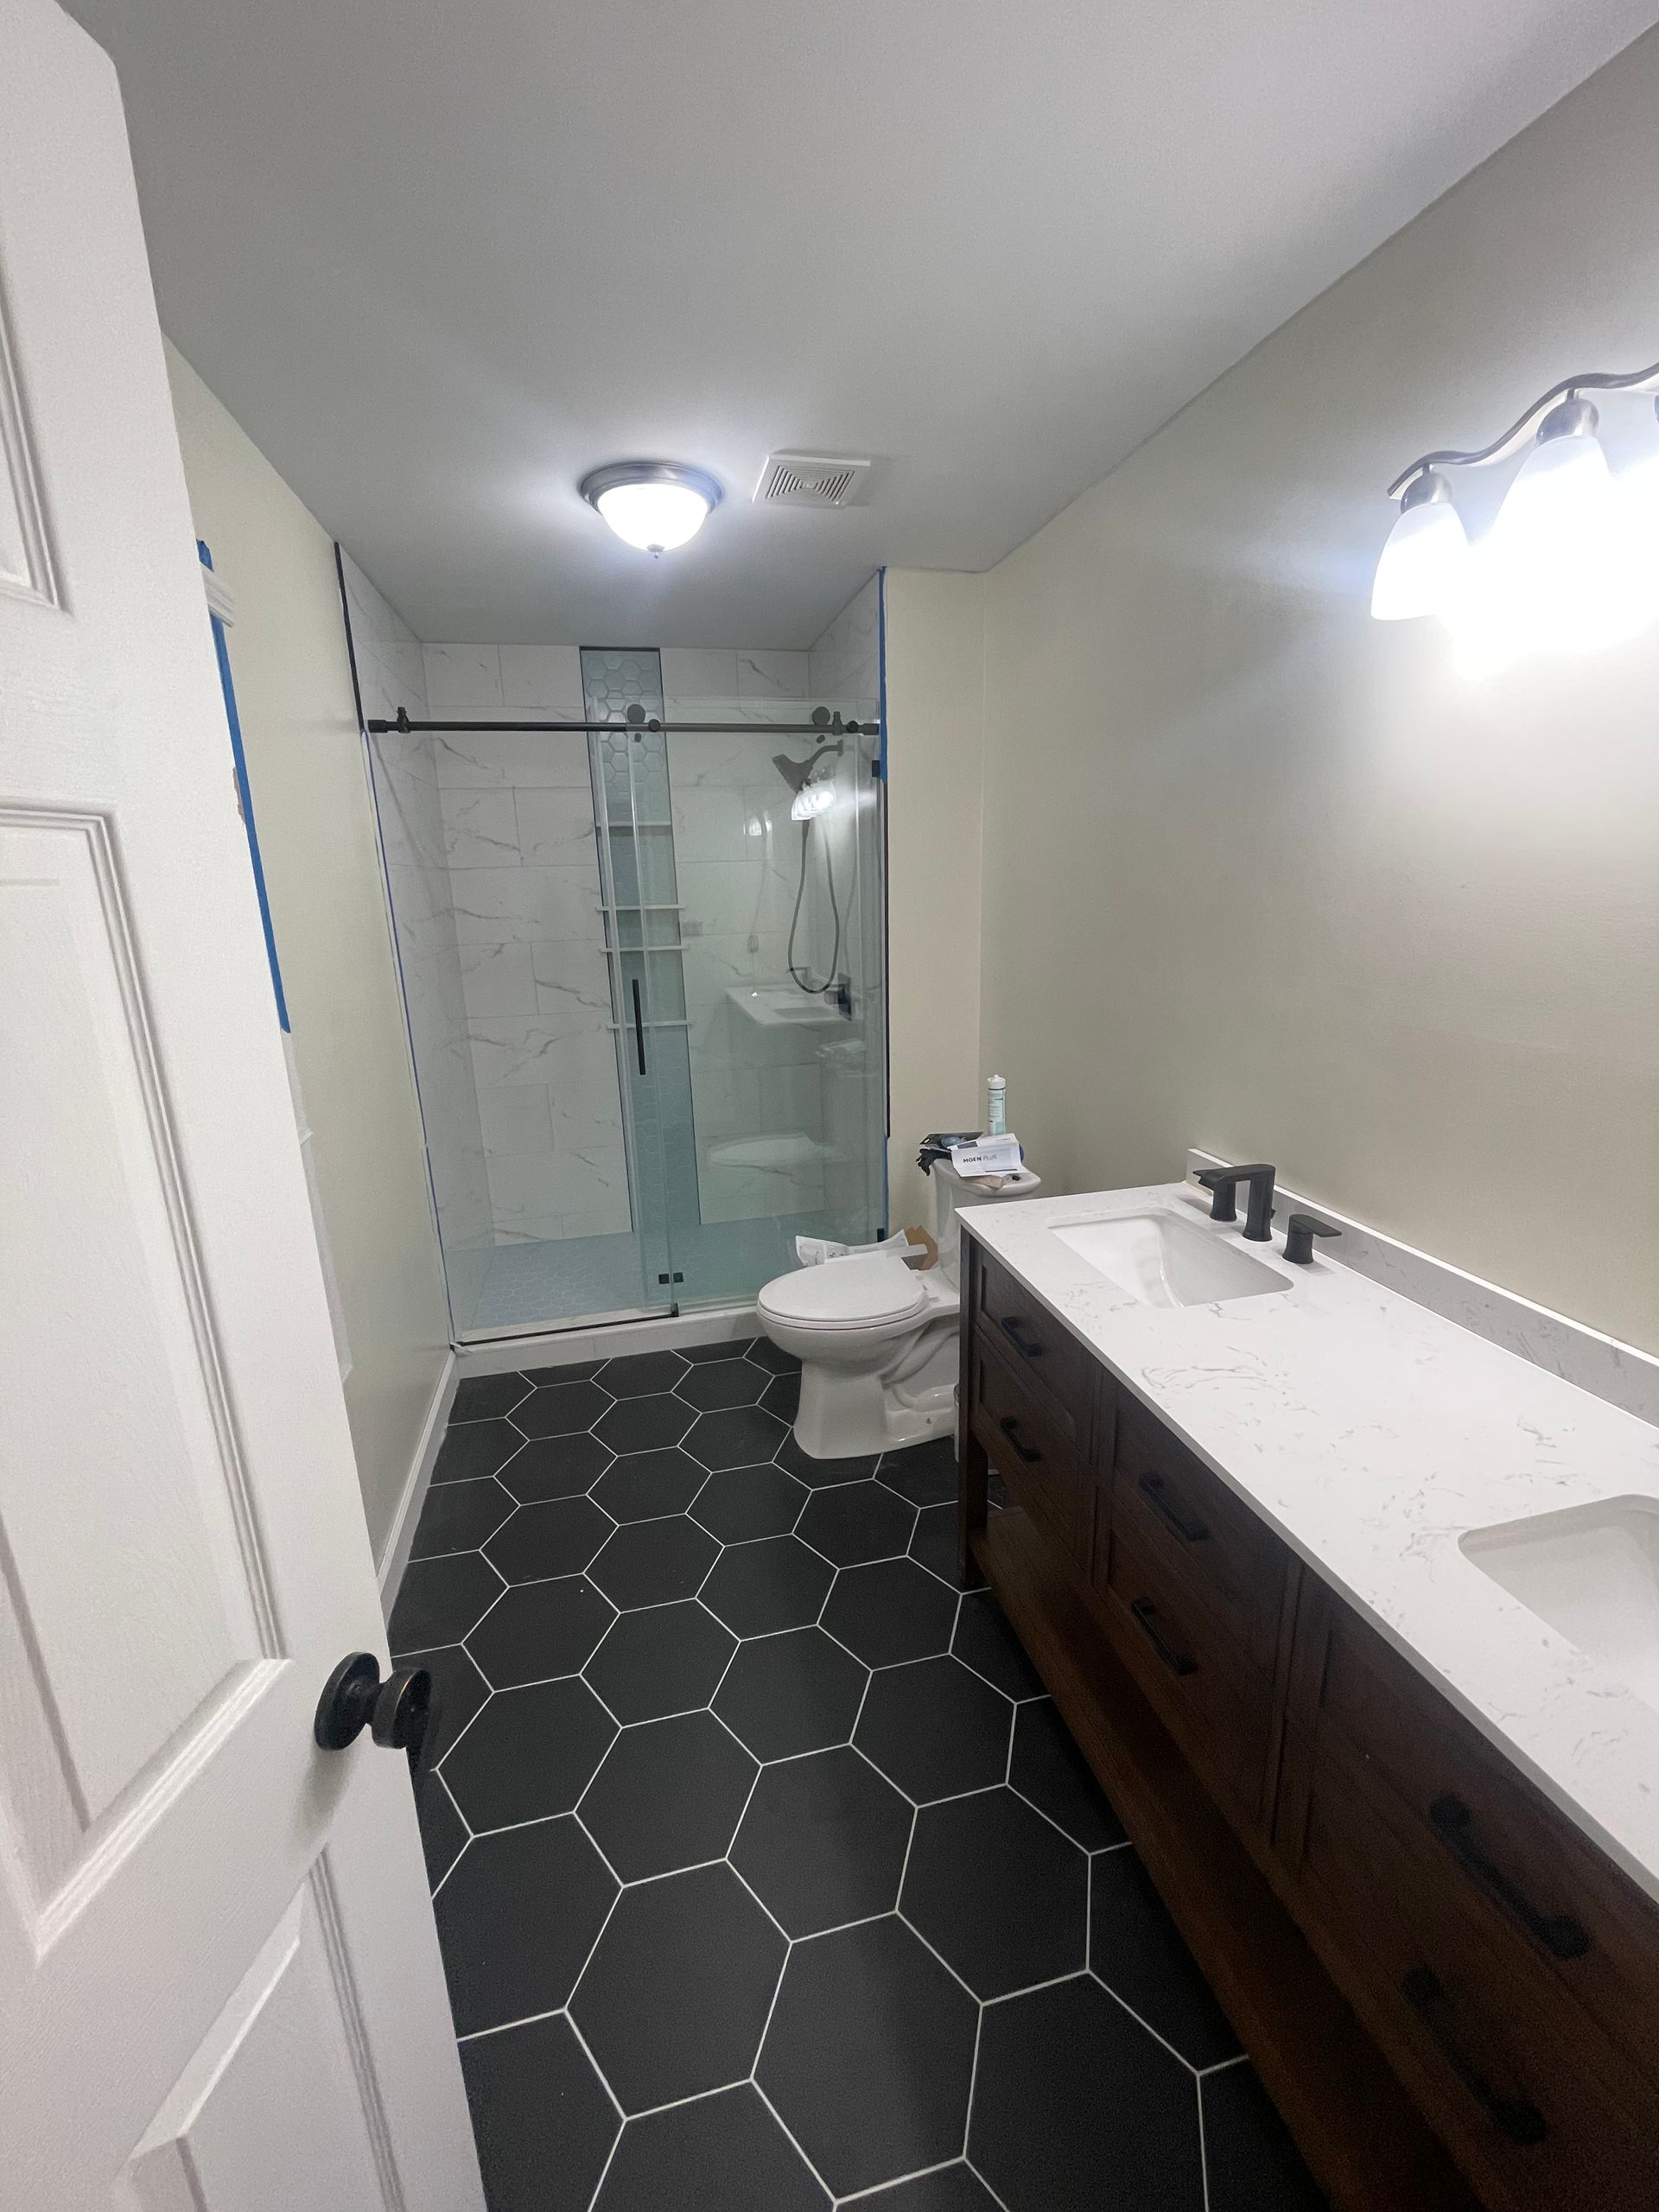 shower fixture installation, toilet replacement, vanity installation, bathroom countertops, shower tile, grout, waterproofing